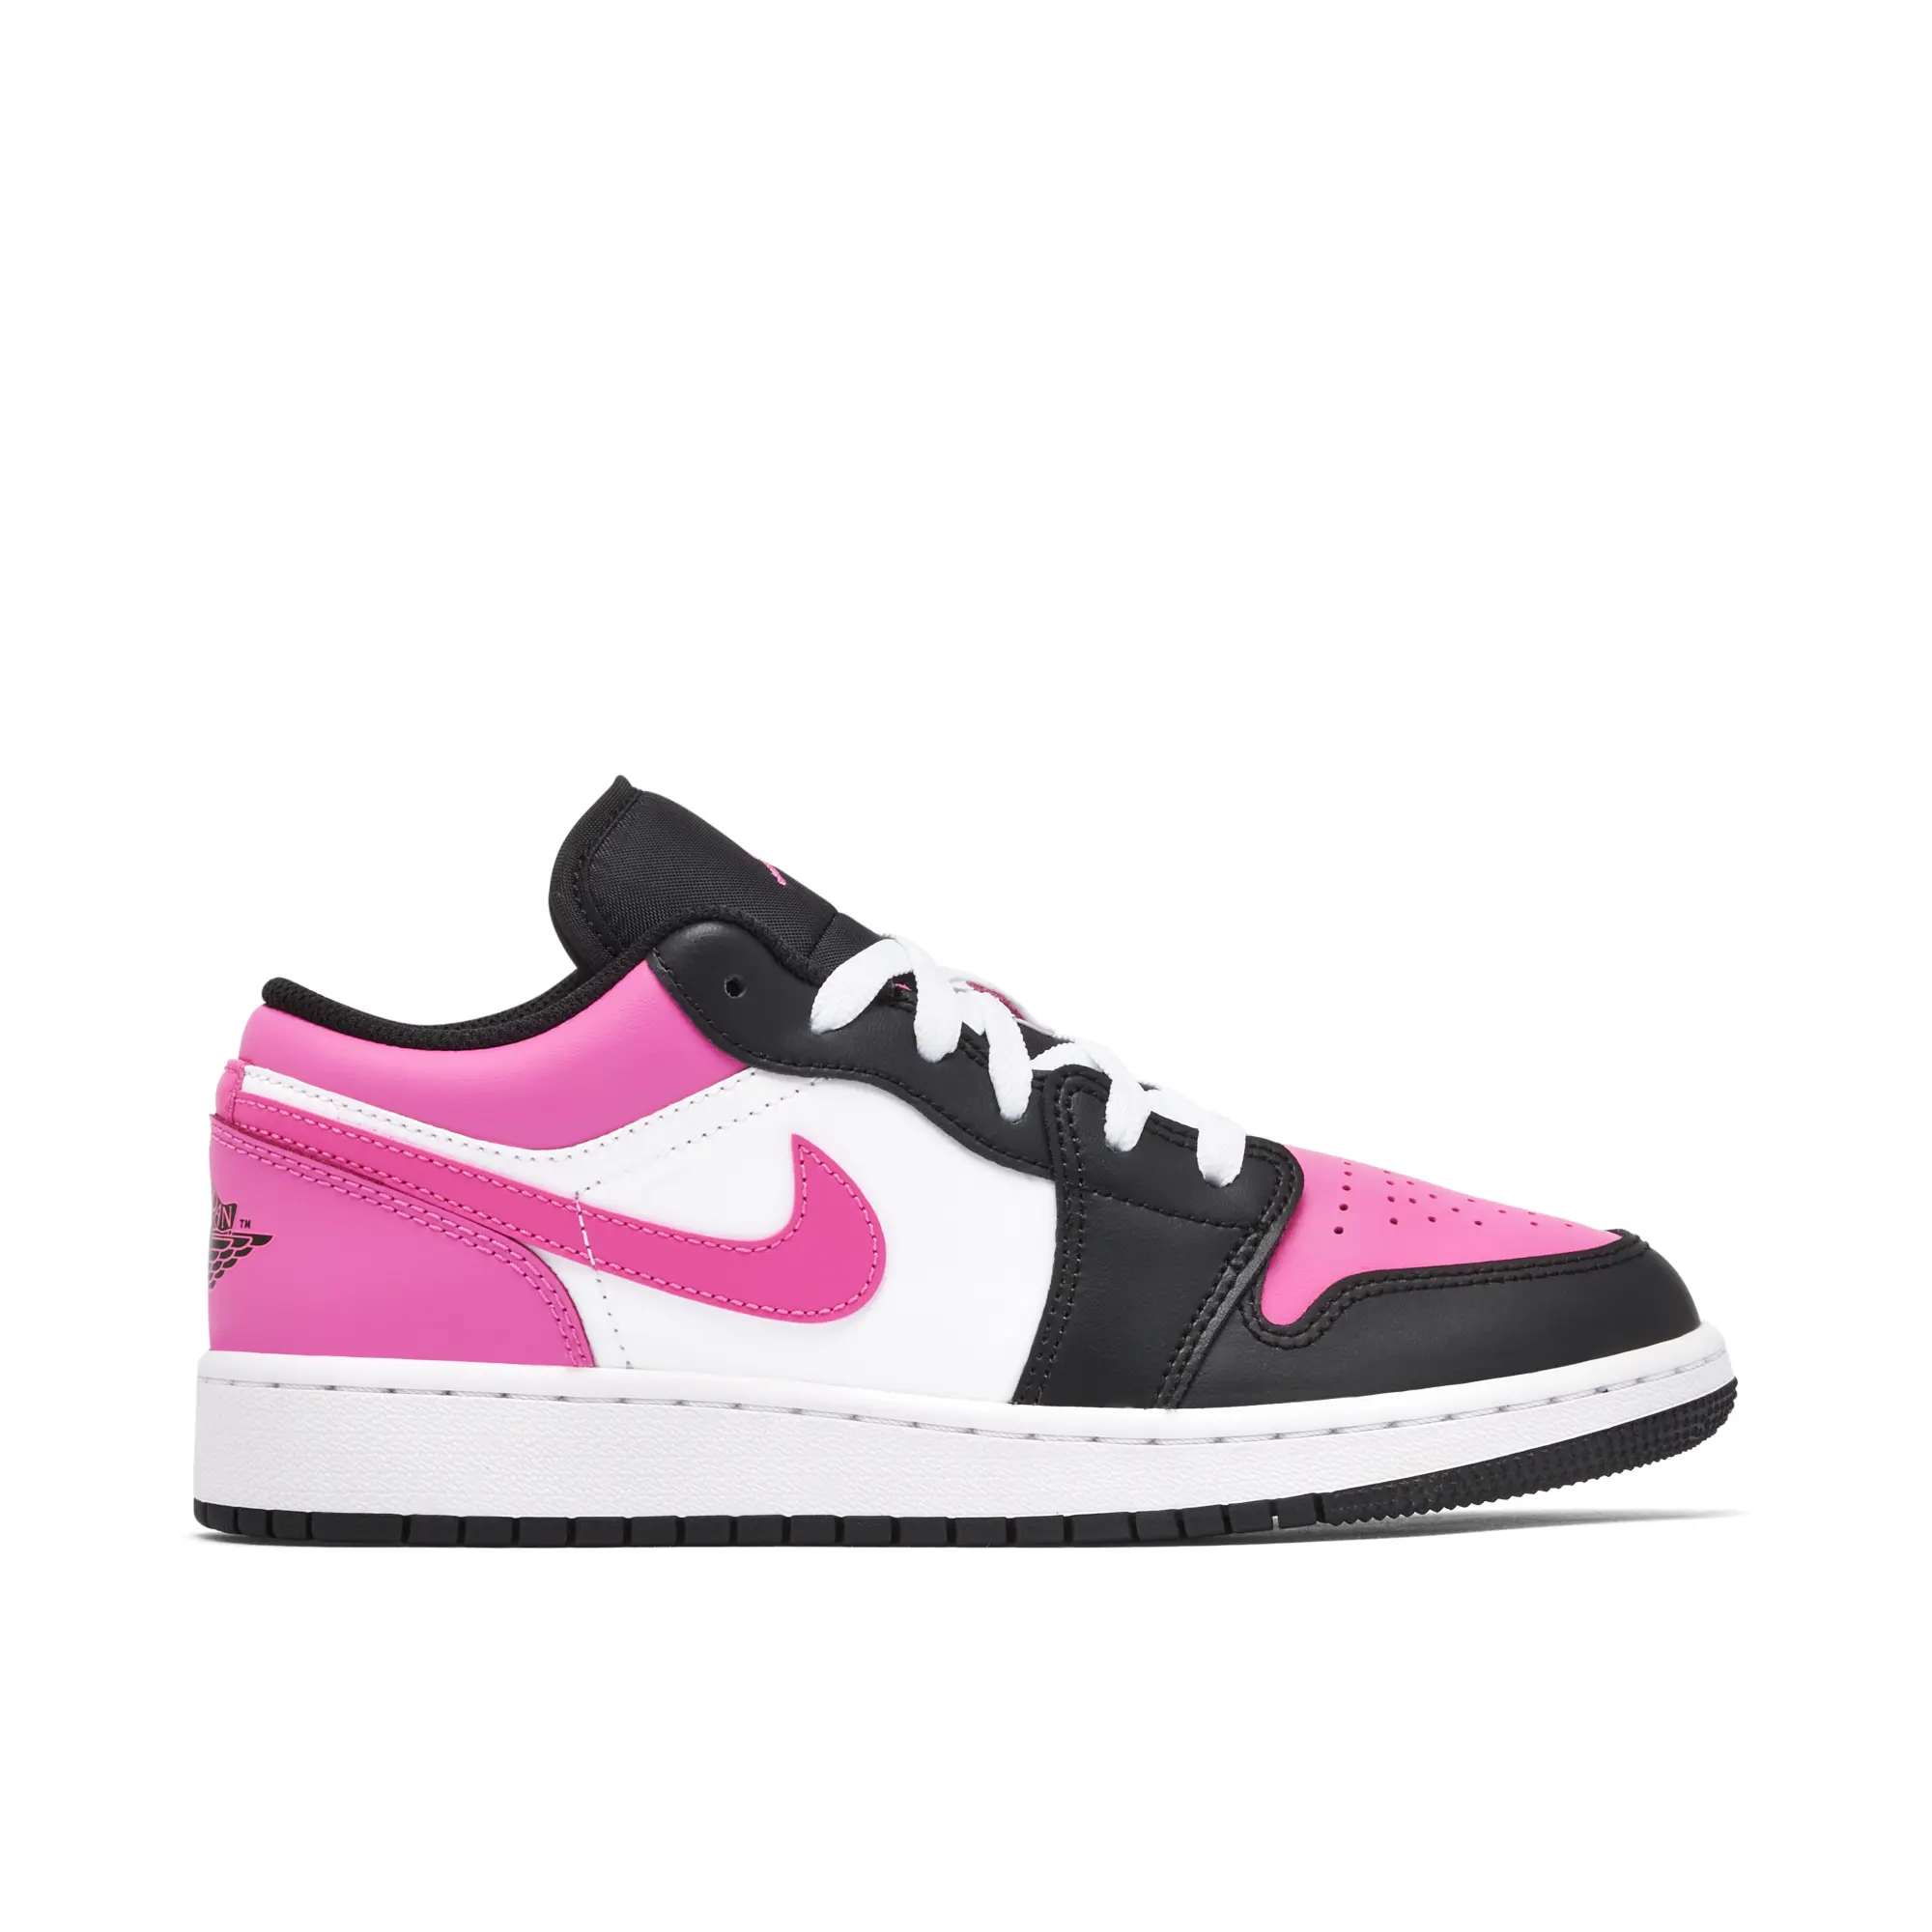 Nike Jordan Air Jordan 1 Low Pinksicle GS